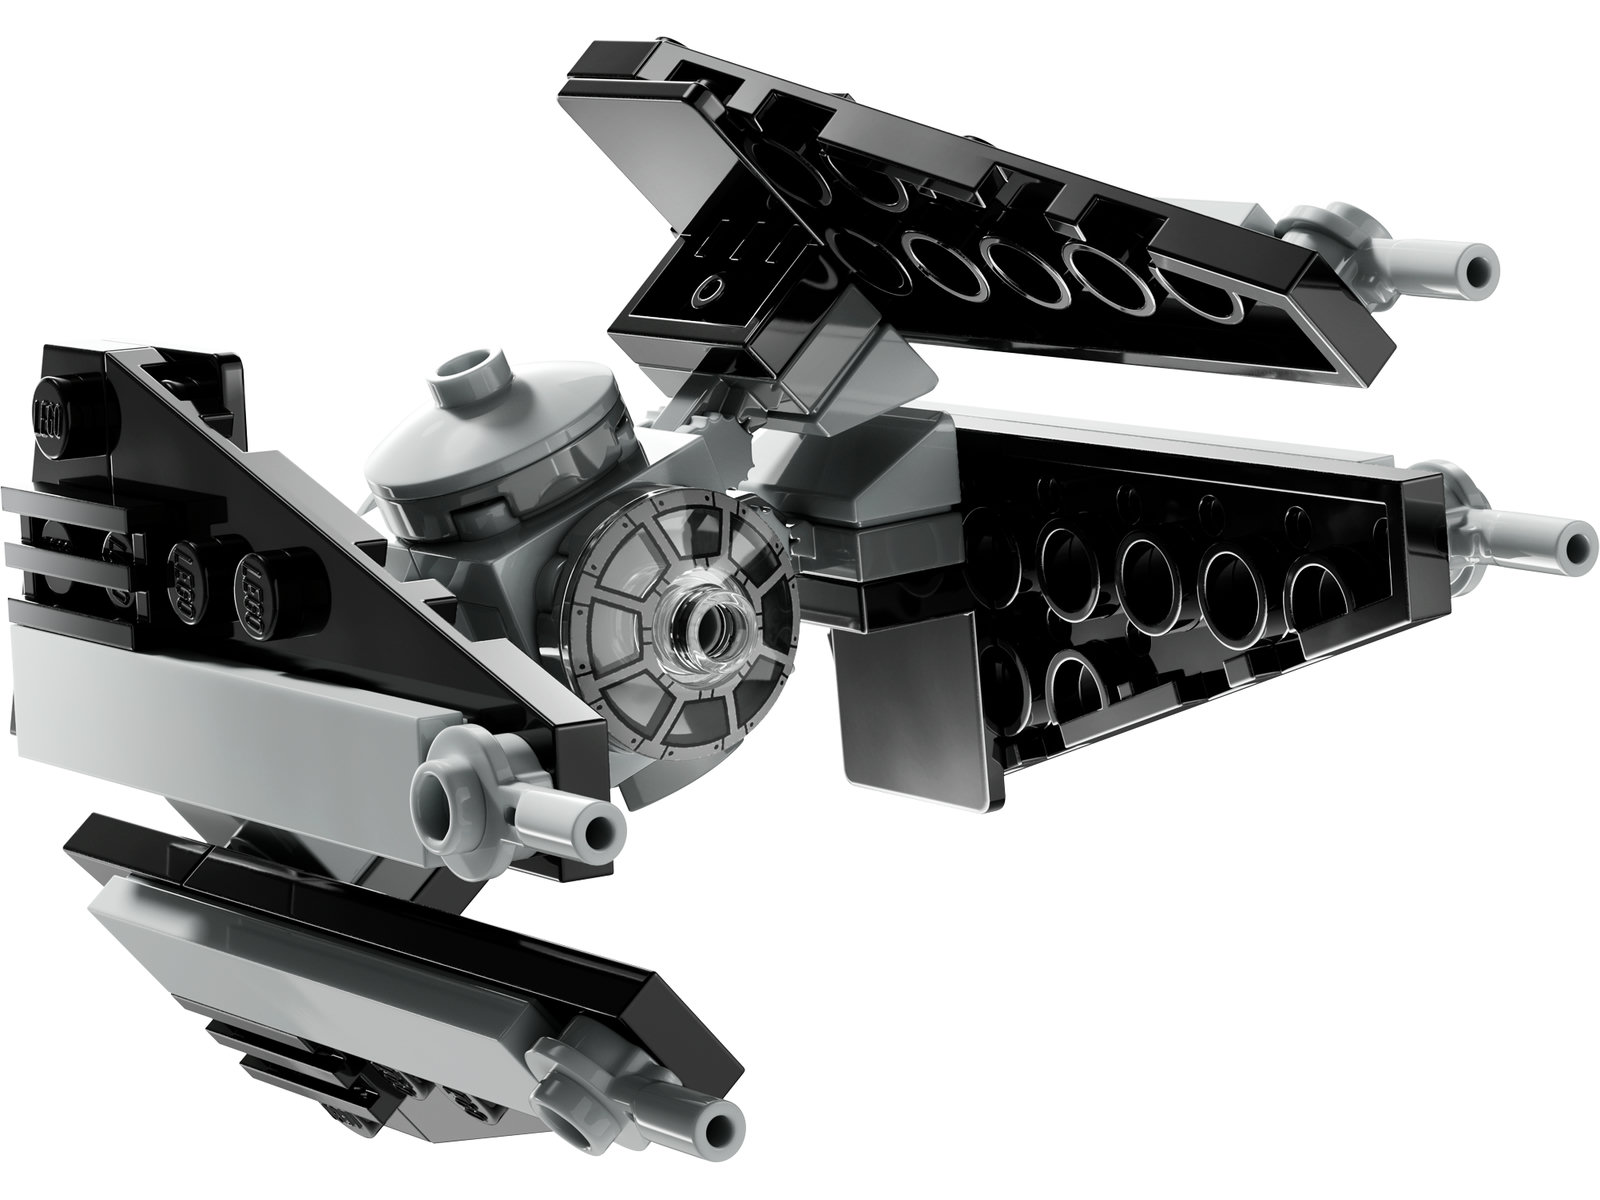 LEGO® Star Wars™ 30685 - TIE-Abfangjäger™ Mini-Modell